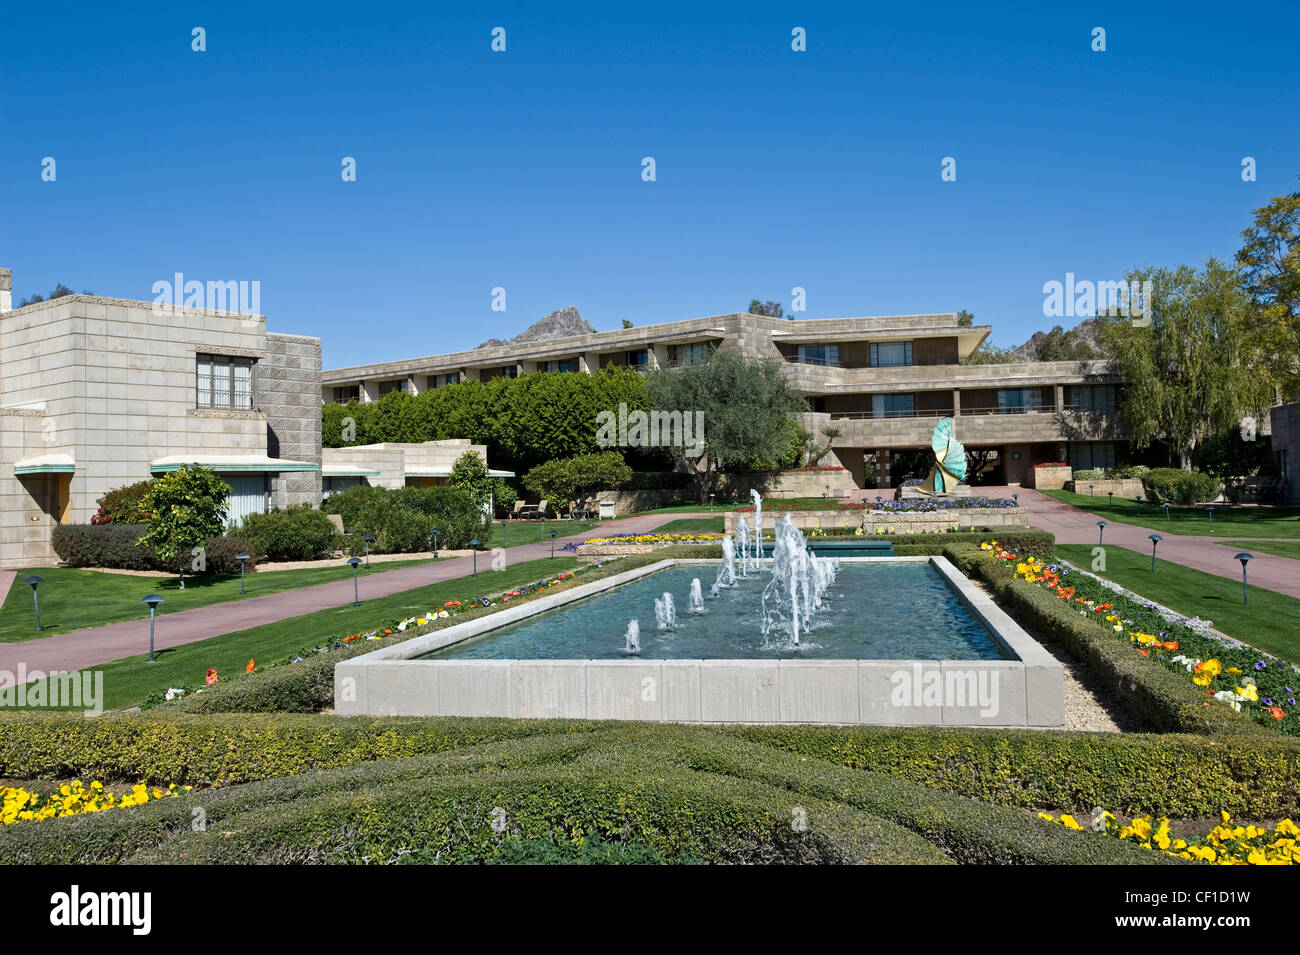 The Biltmore Resort & Hotel, Phoenix, Arizona, USA Stock Photo